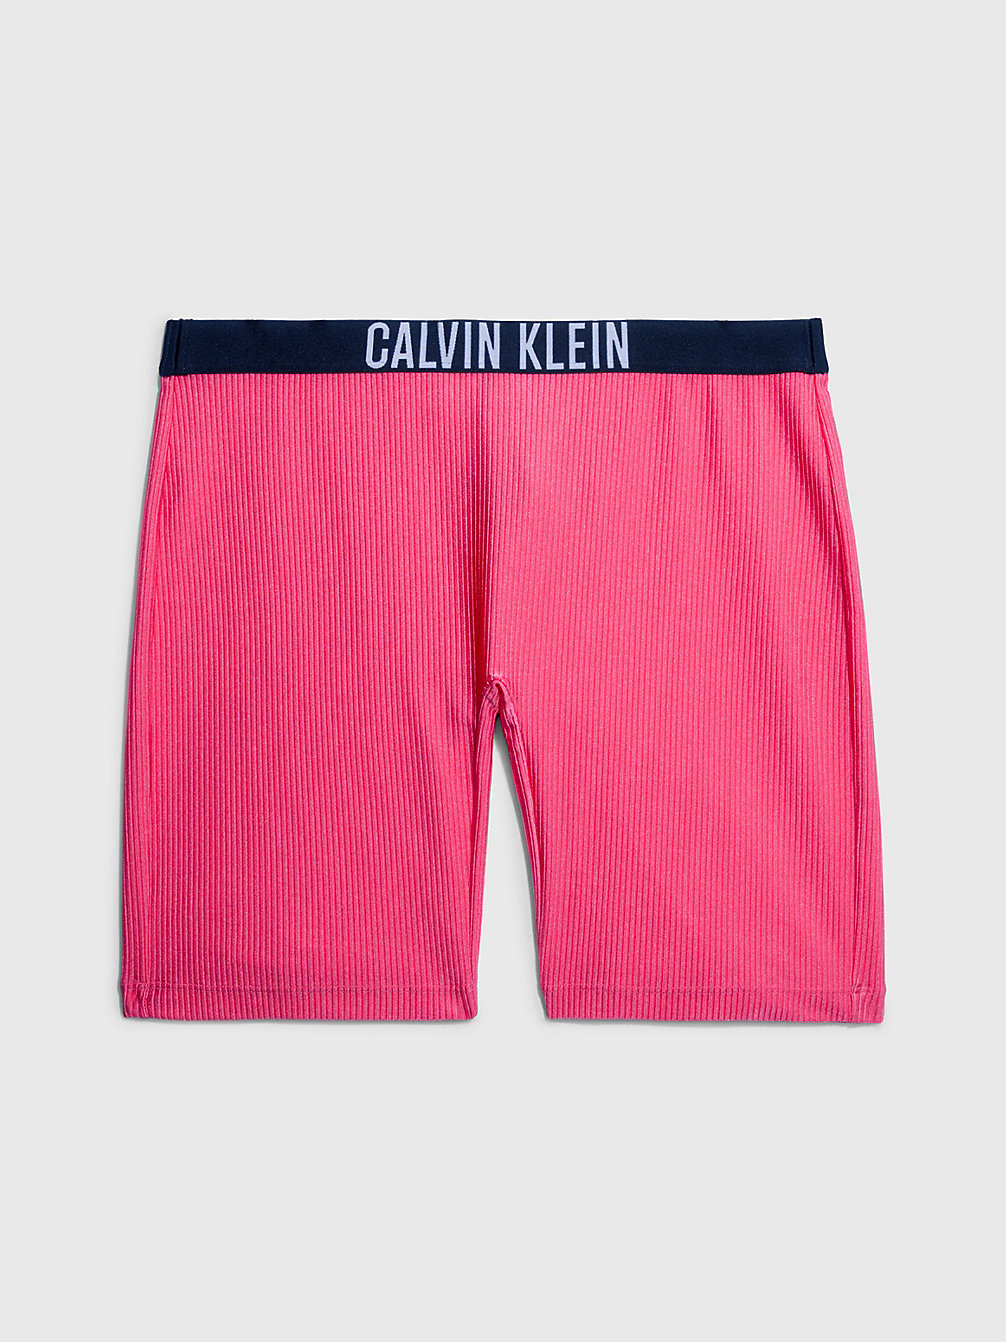 PINK FLASH Badeshorts – Intense Power undefined Damen Calvin Klein